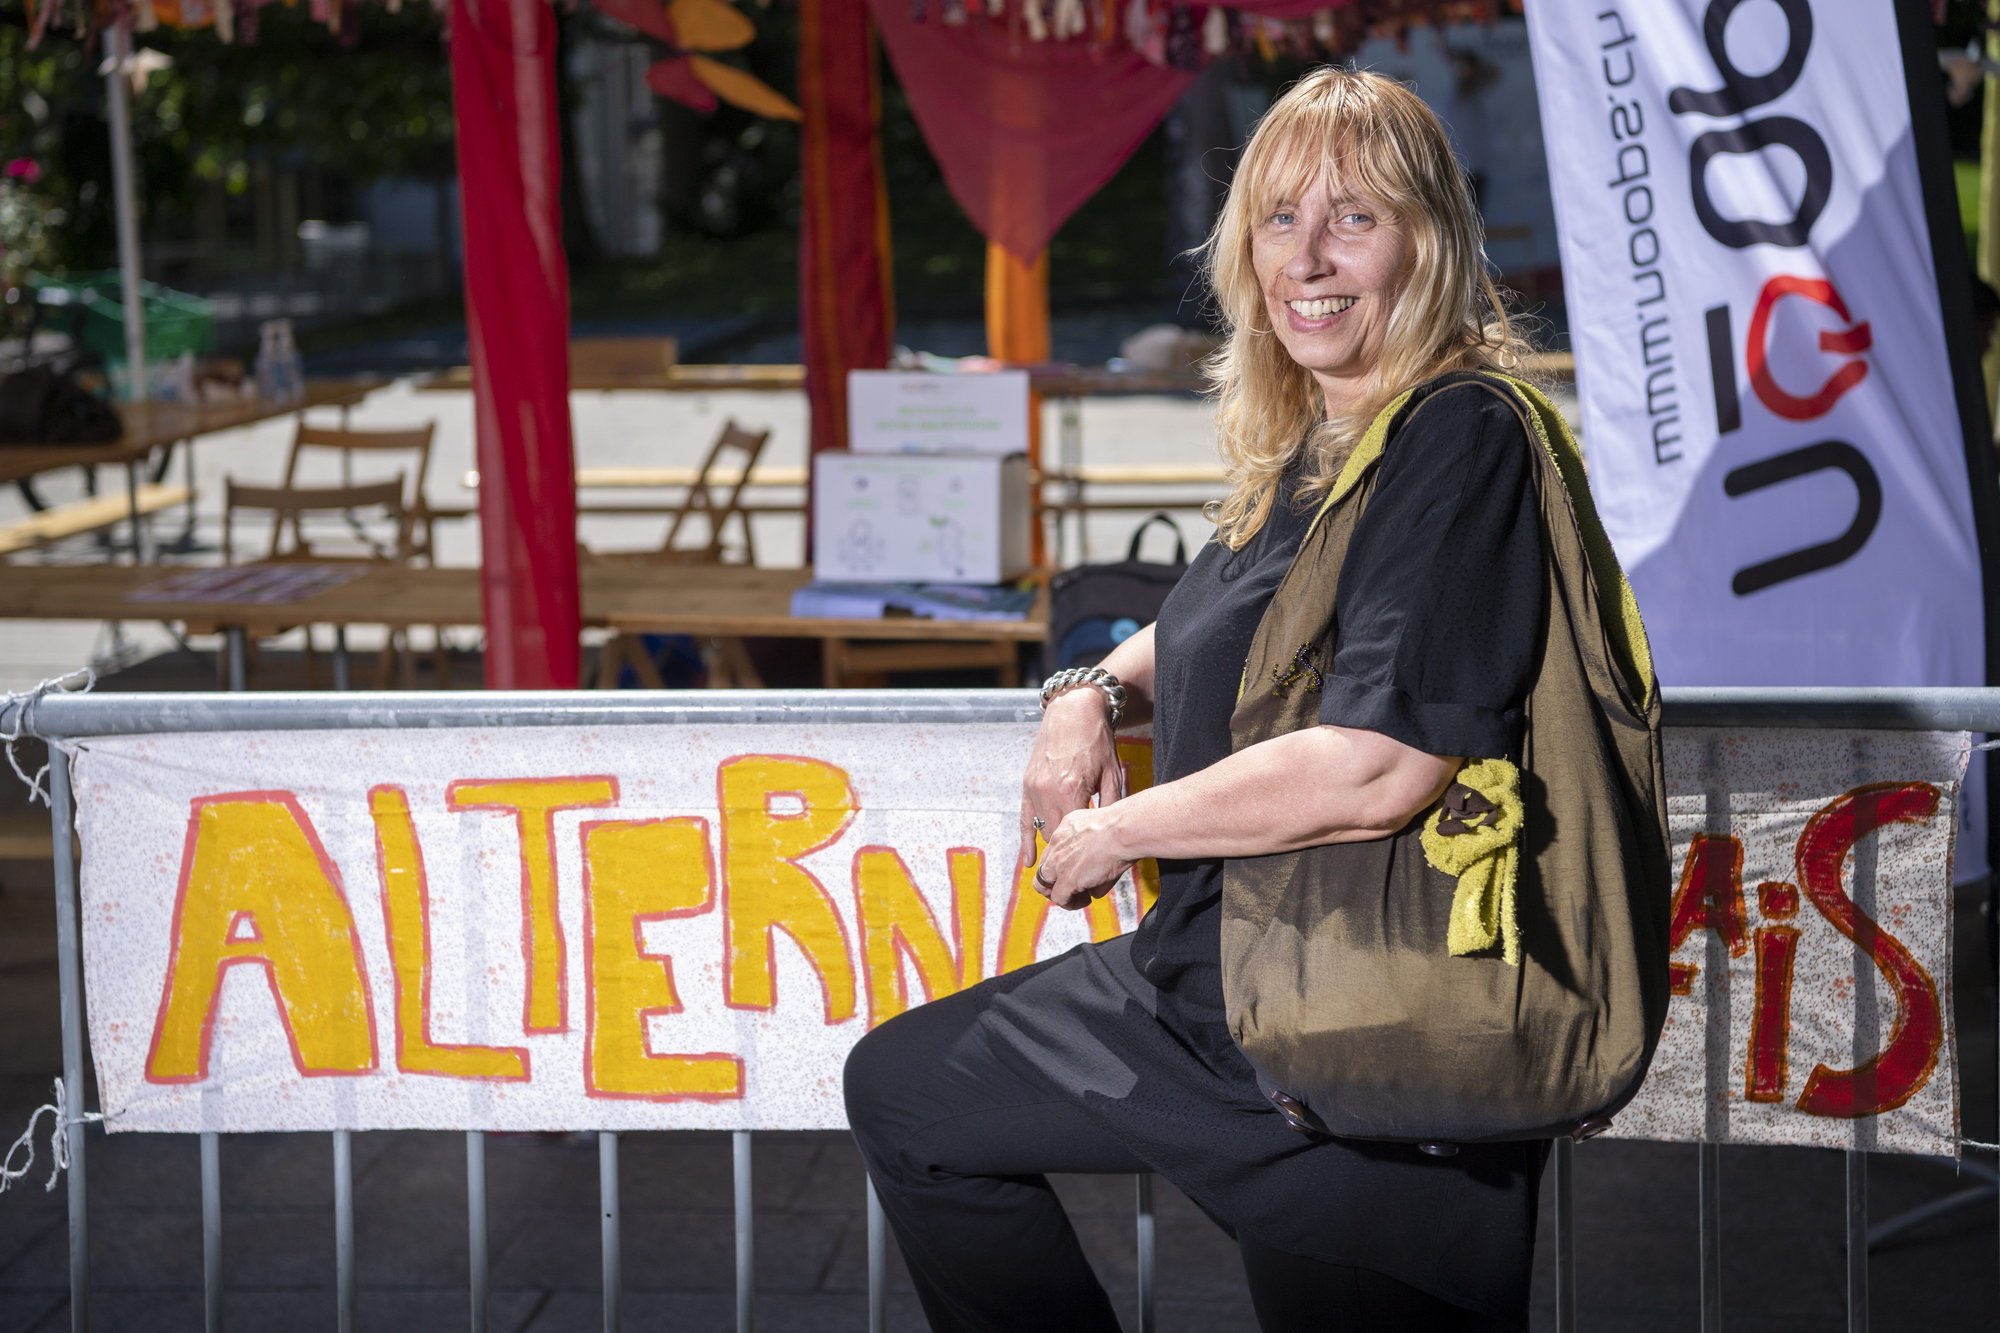 Sylvie Burret a mis sur les rails la coopérative oessor dans le cadre du festival Alternati'Valais qui a eu lieu cette semaine dans le canton.